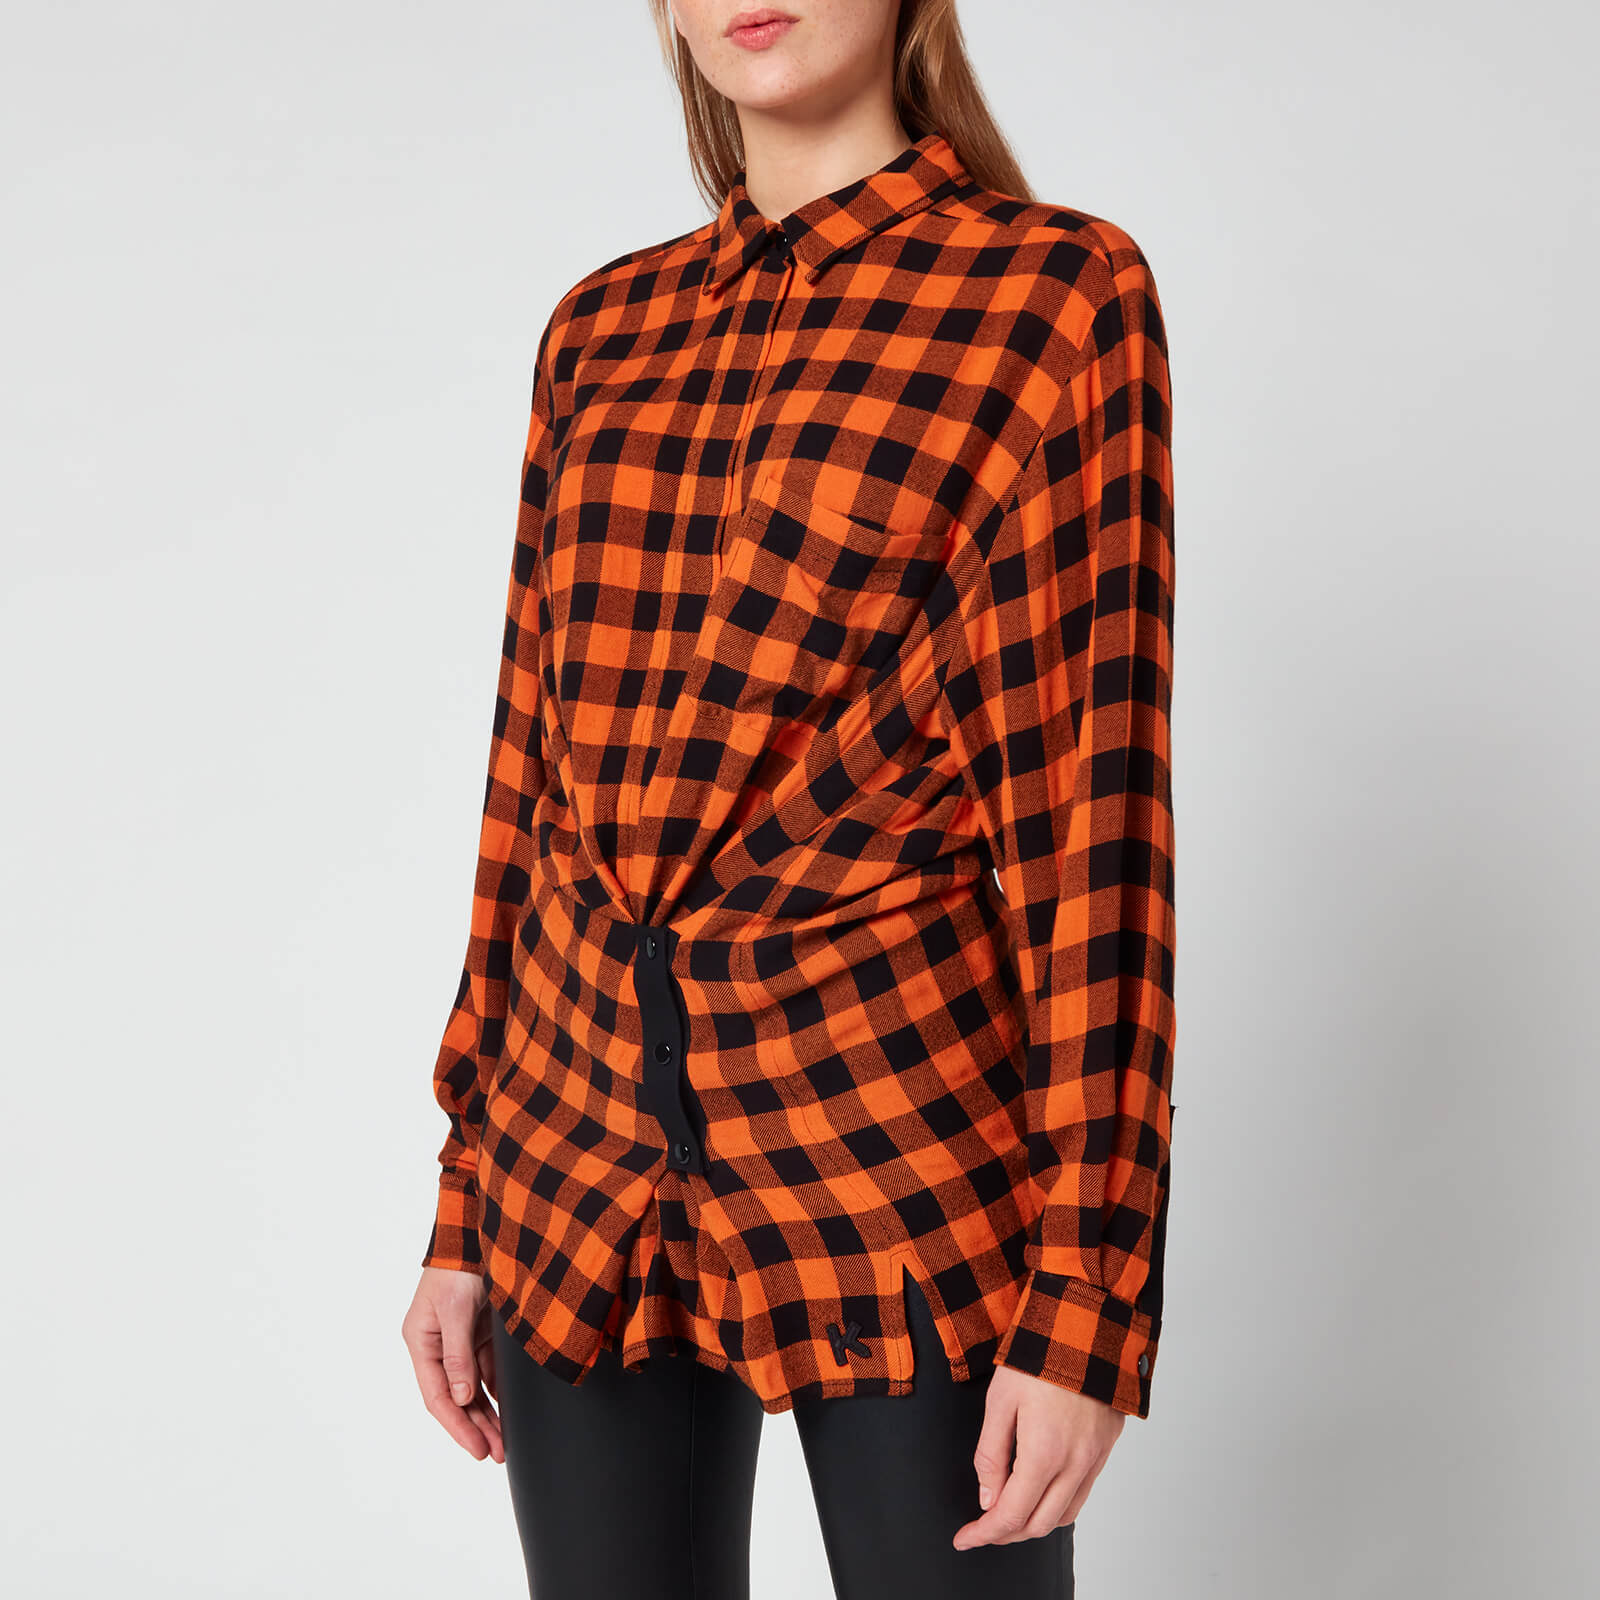 KENZO Women's Shirt Long Sleeves Buttons - Medium Orange - EU36/UK6